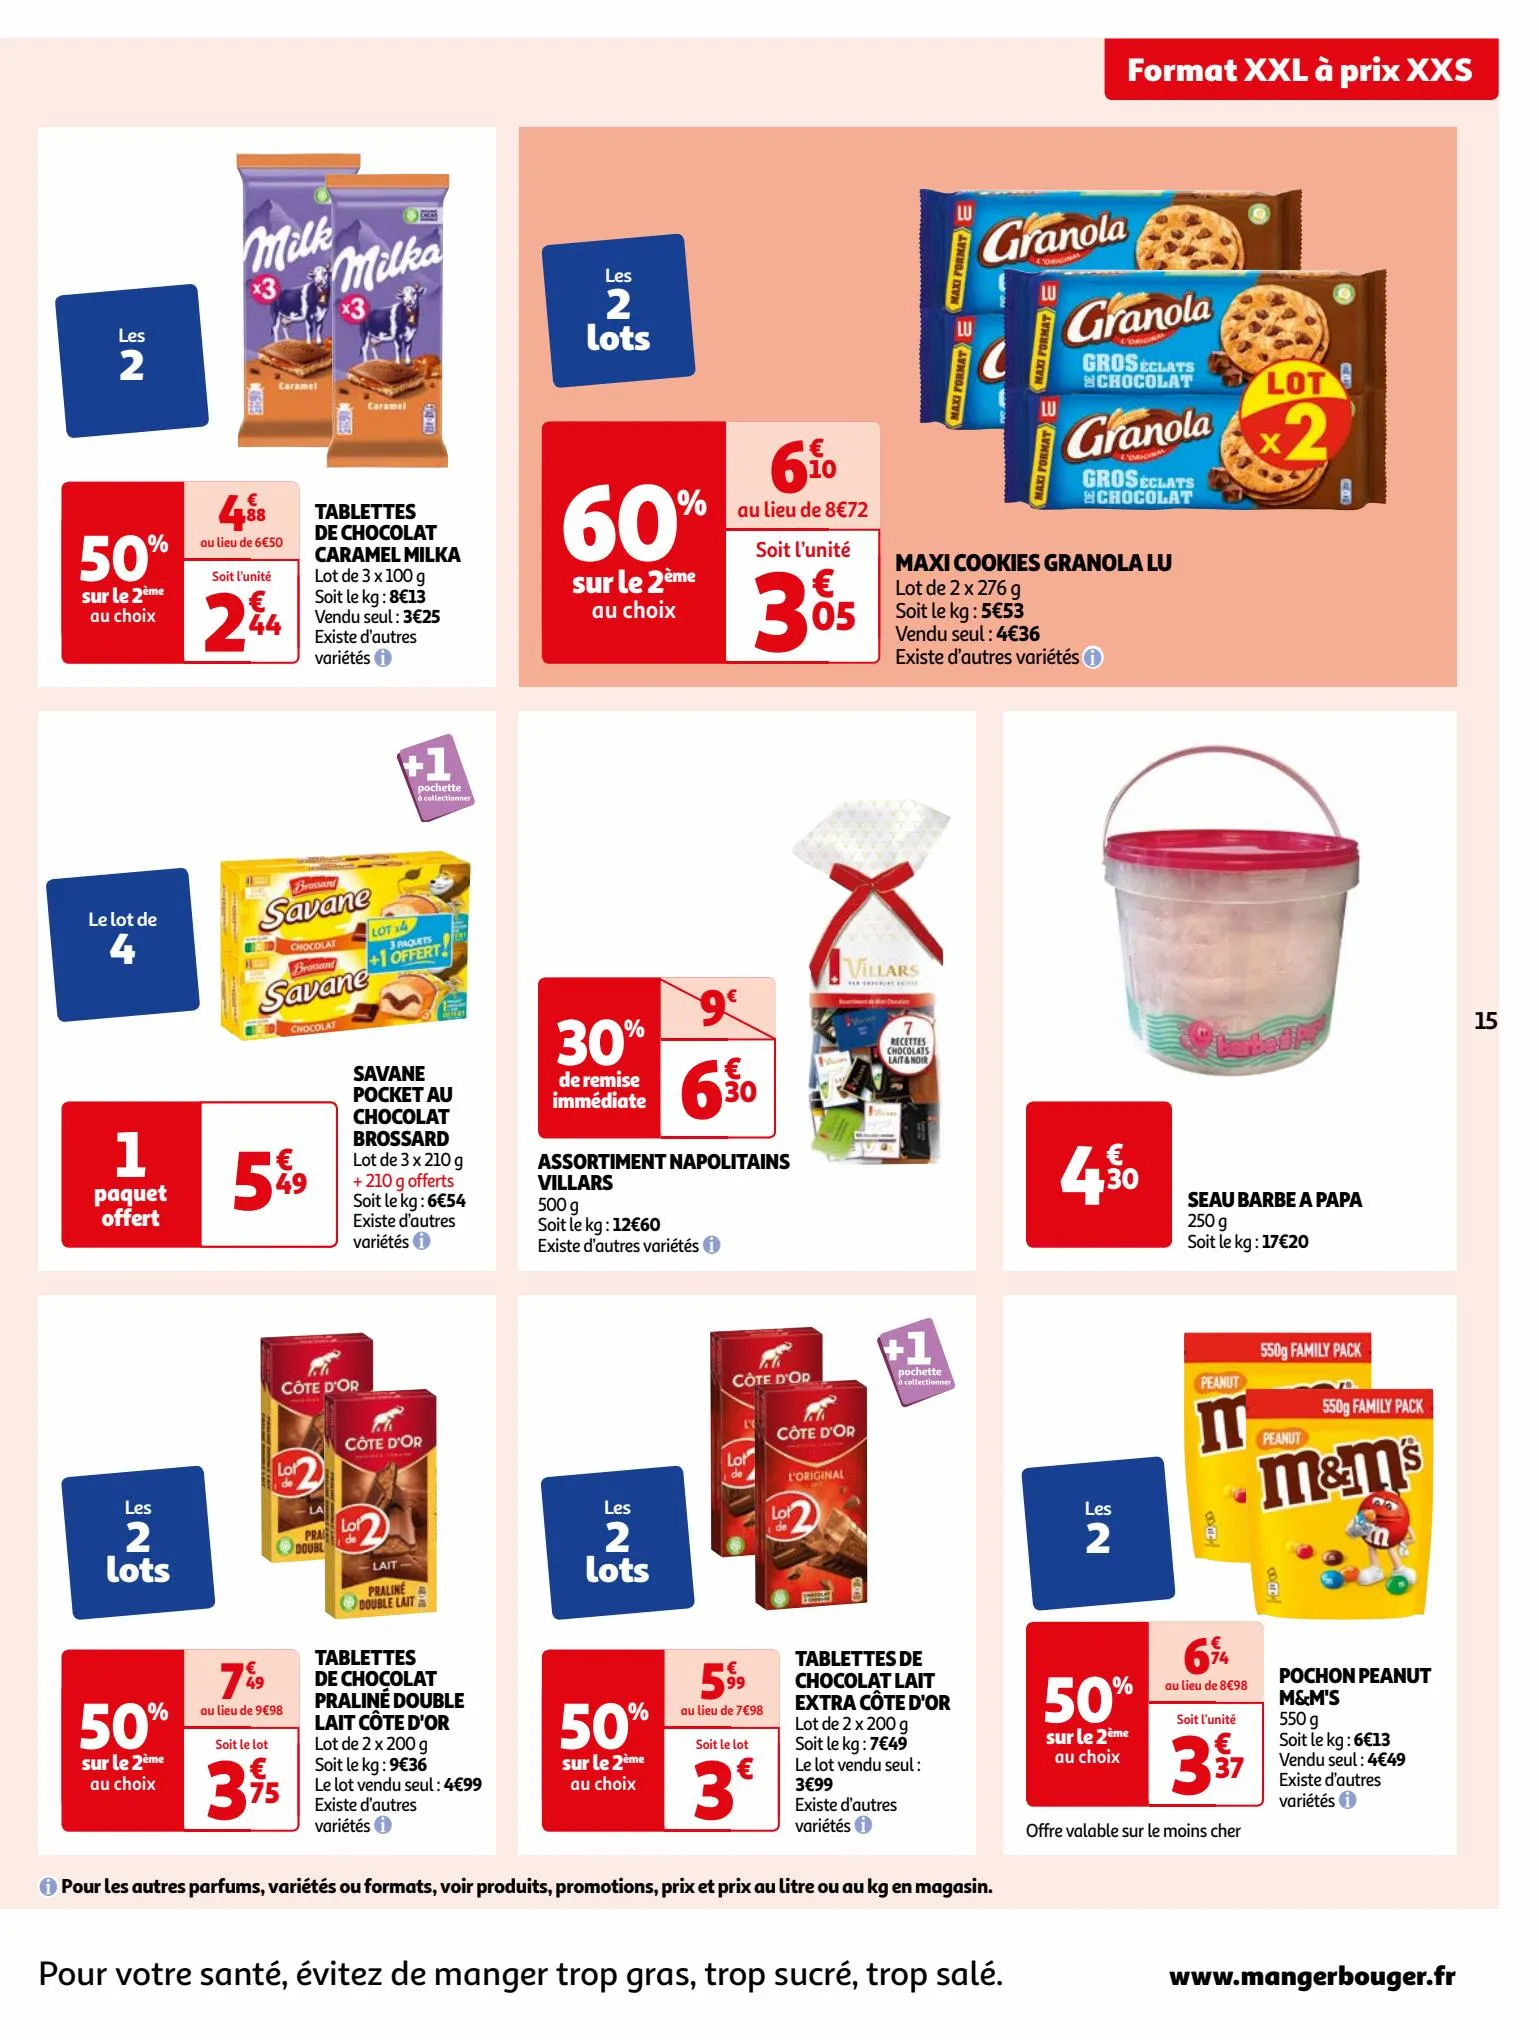 Catalogue Format XXL à prix XXS dans votre supermarché, page 00015